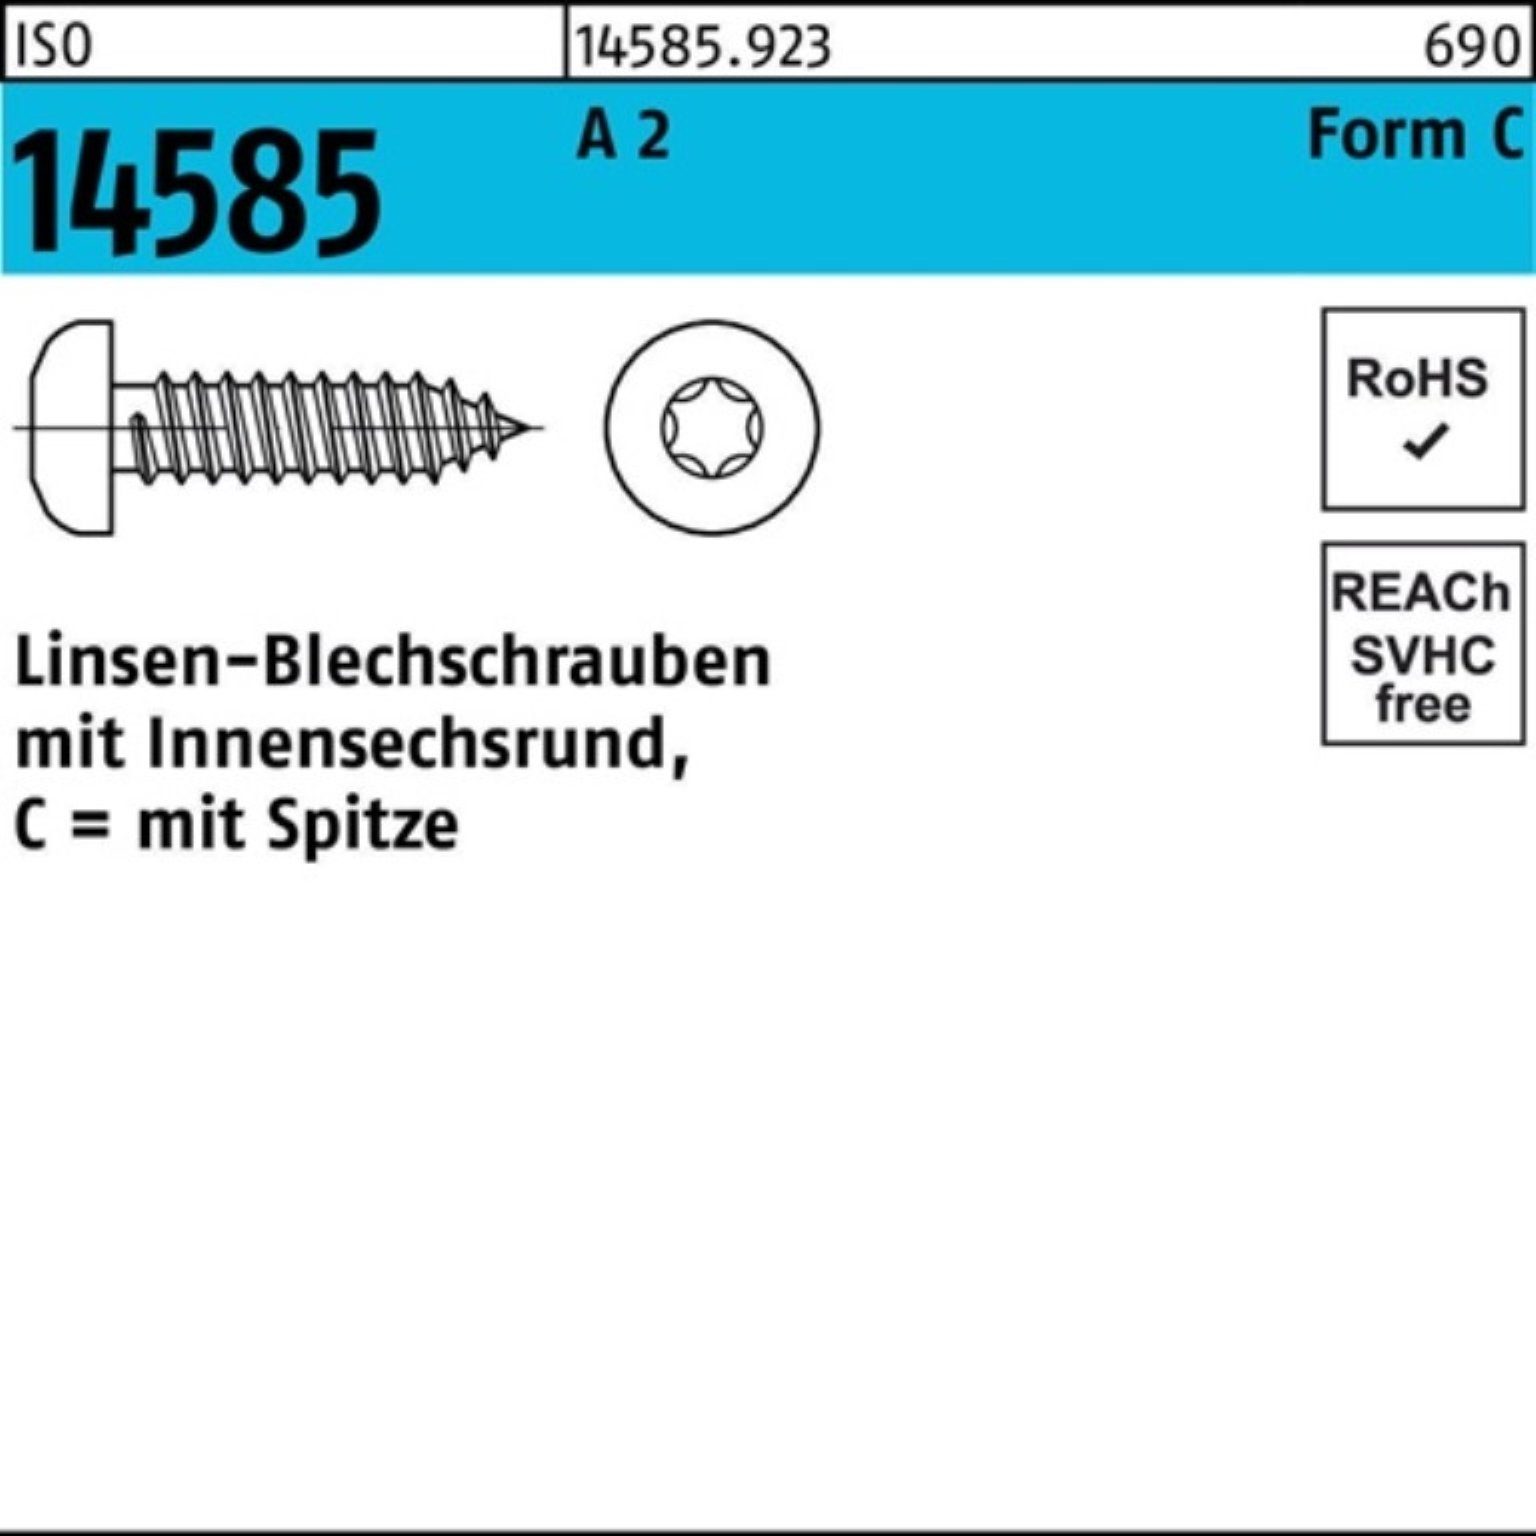 50 ISR Blechschraube St Linsenblechschraube 2 ISO Pack -C 250er Reyher A 6,3x T30 14585 250